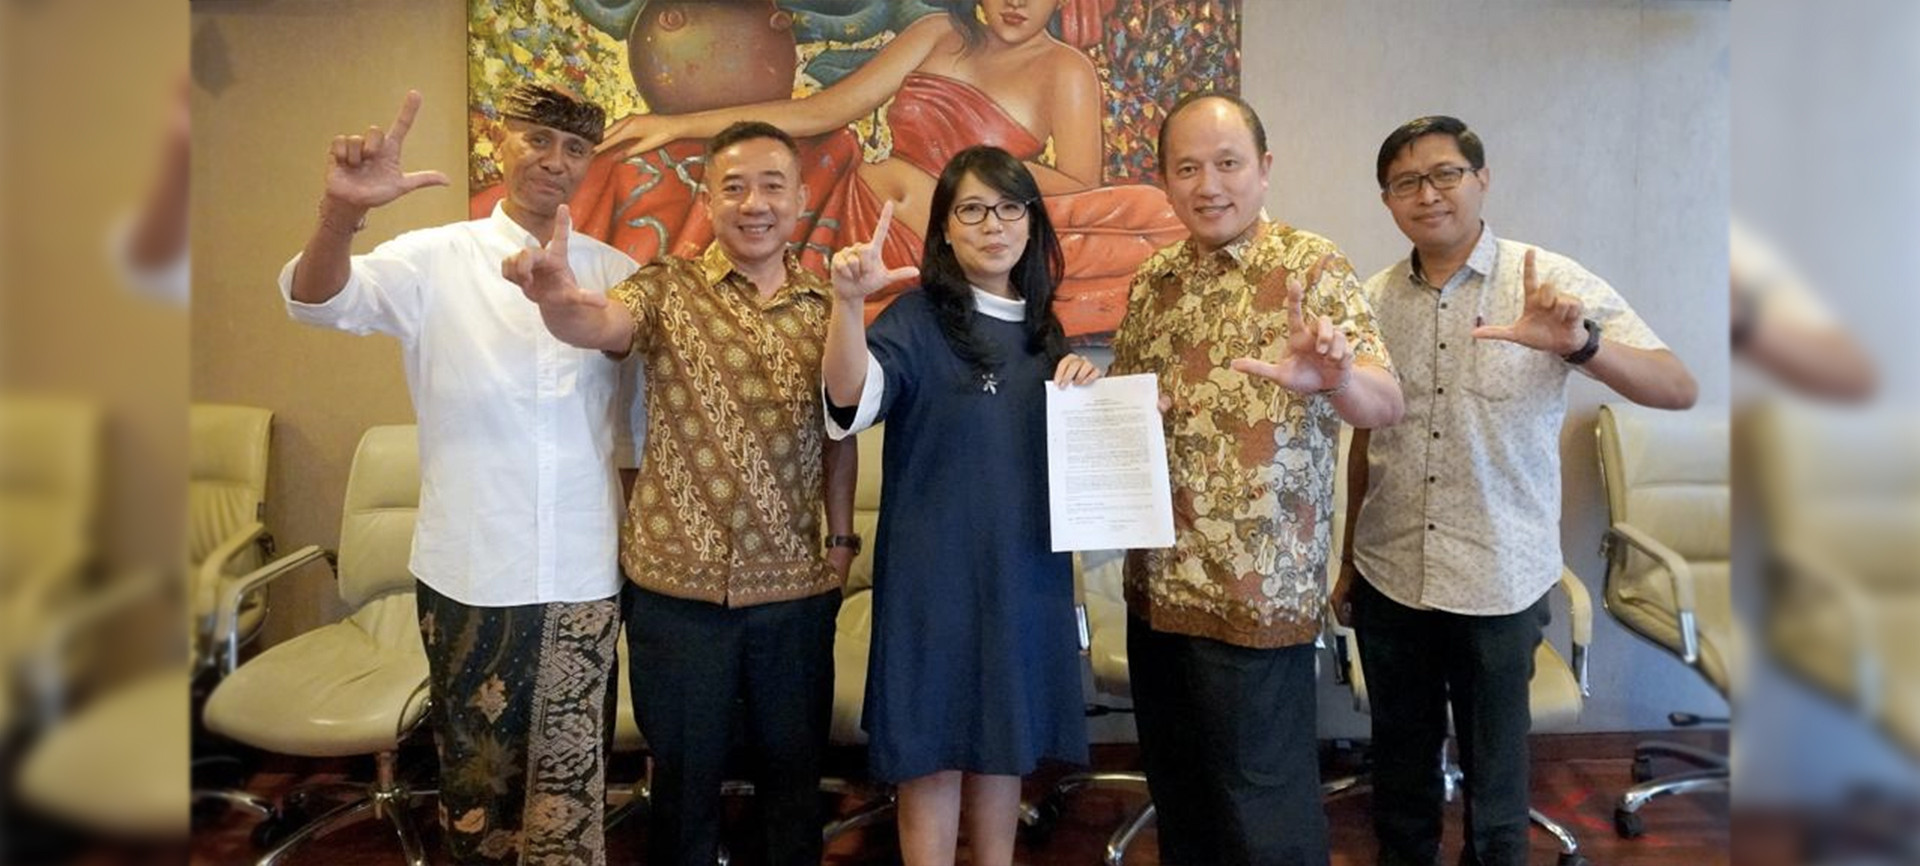 Bali Siap Bangkit! Bank Lestari Bali (BPR) Bersinergi dengan CIMB Niaga, Siapkan Rp 200 Miliar Untuk Support Pertumbuhan UMKM Bali